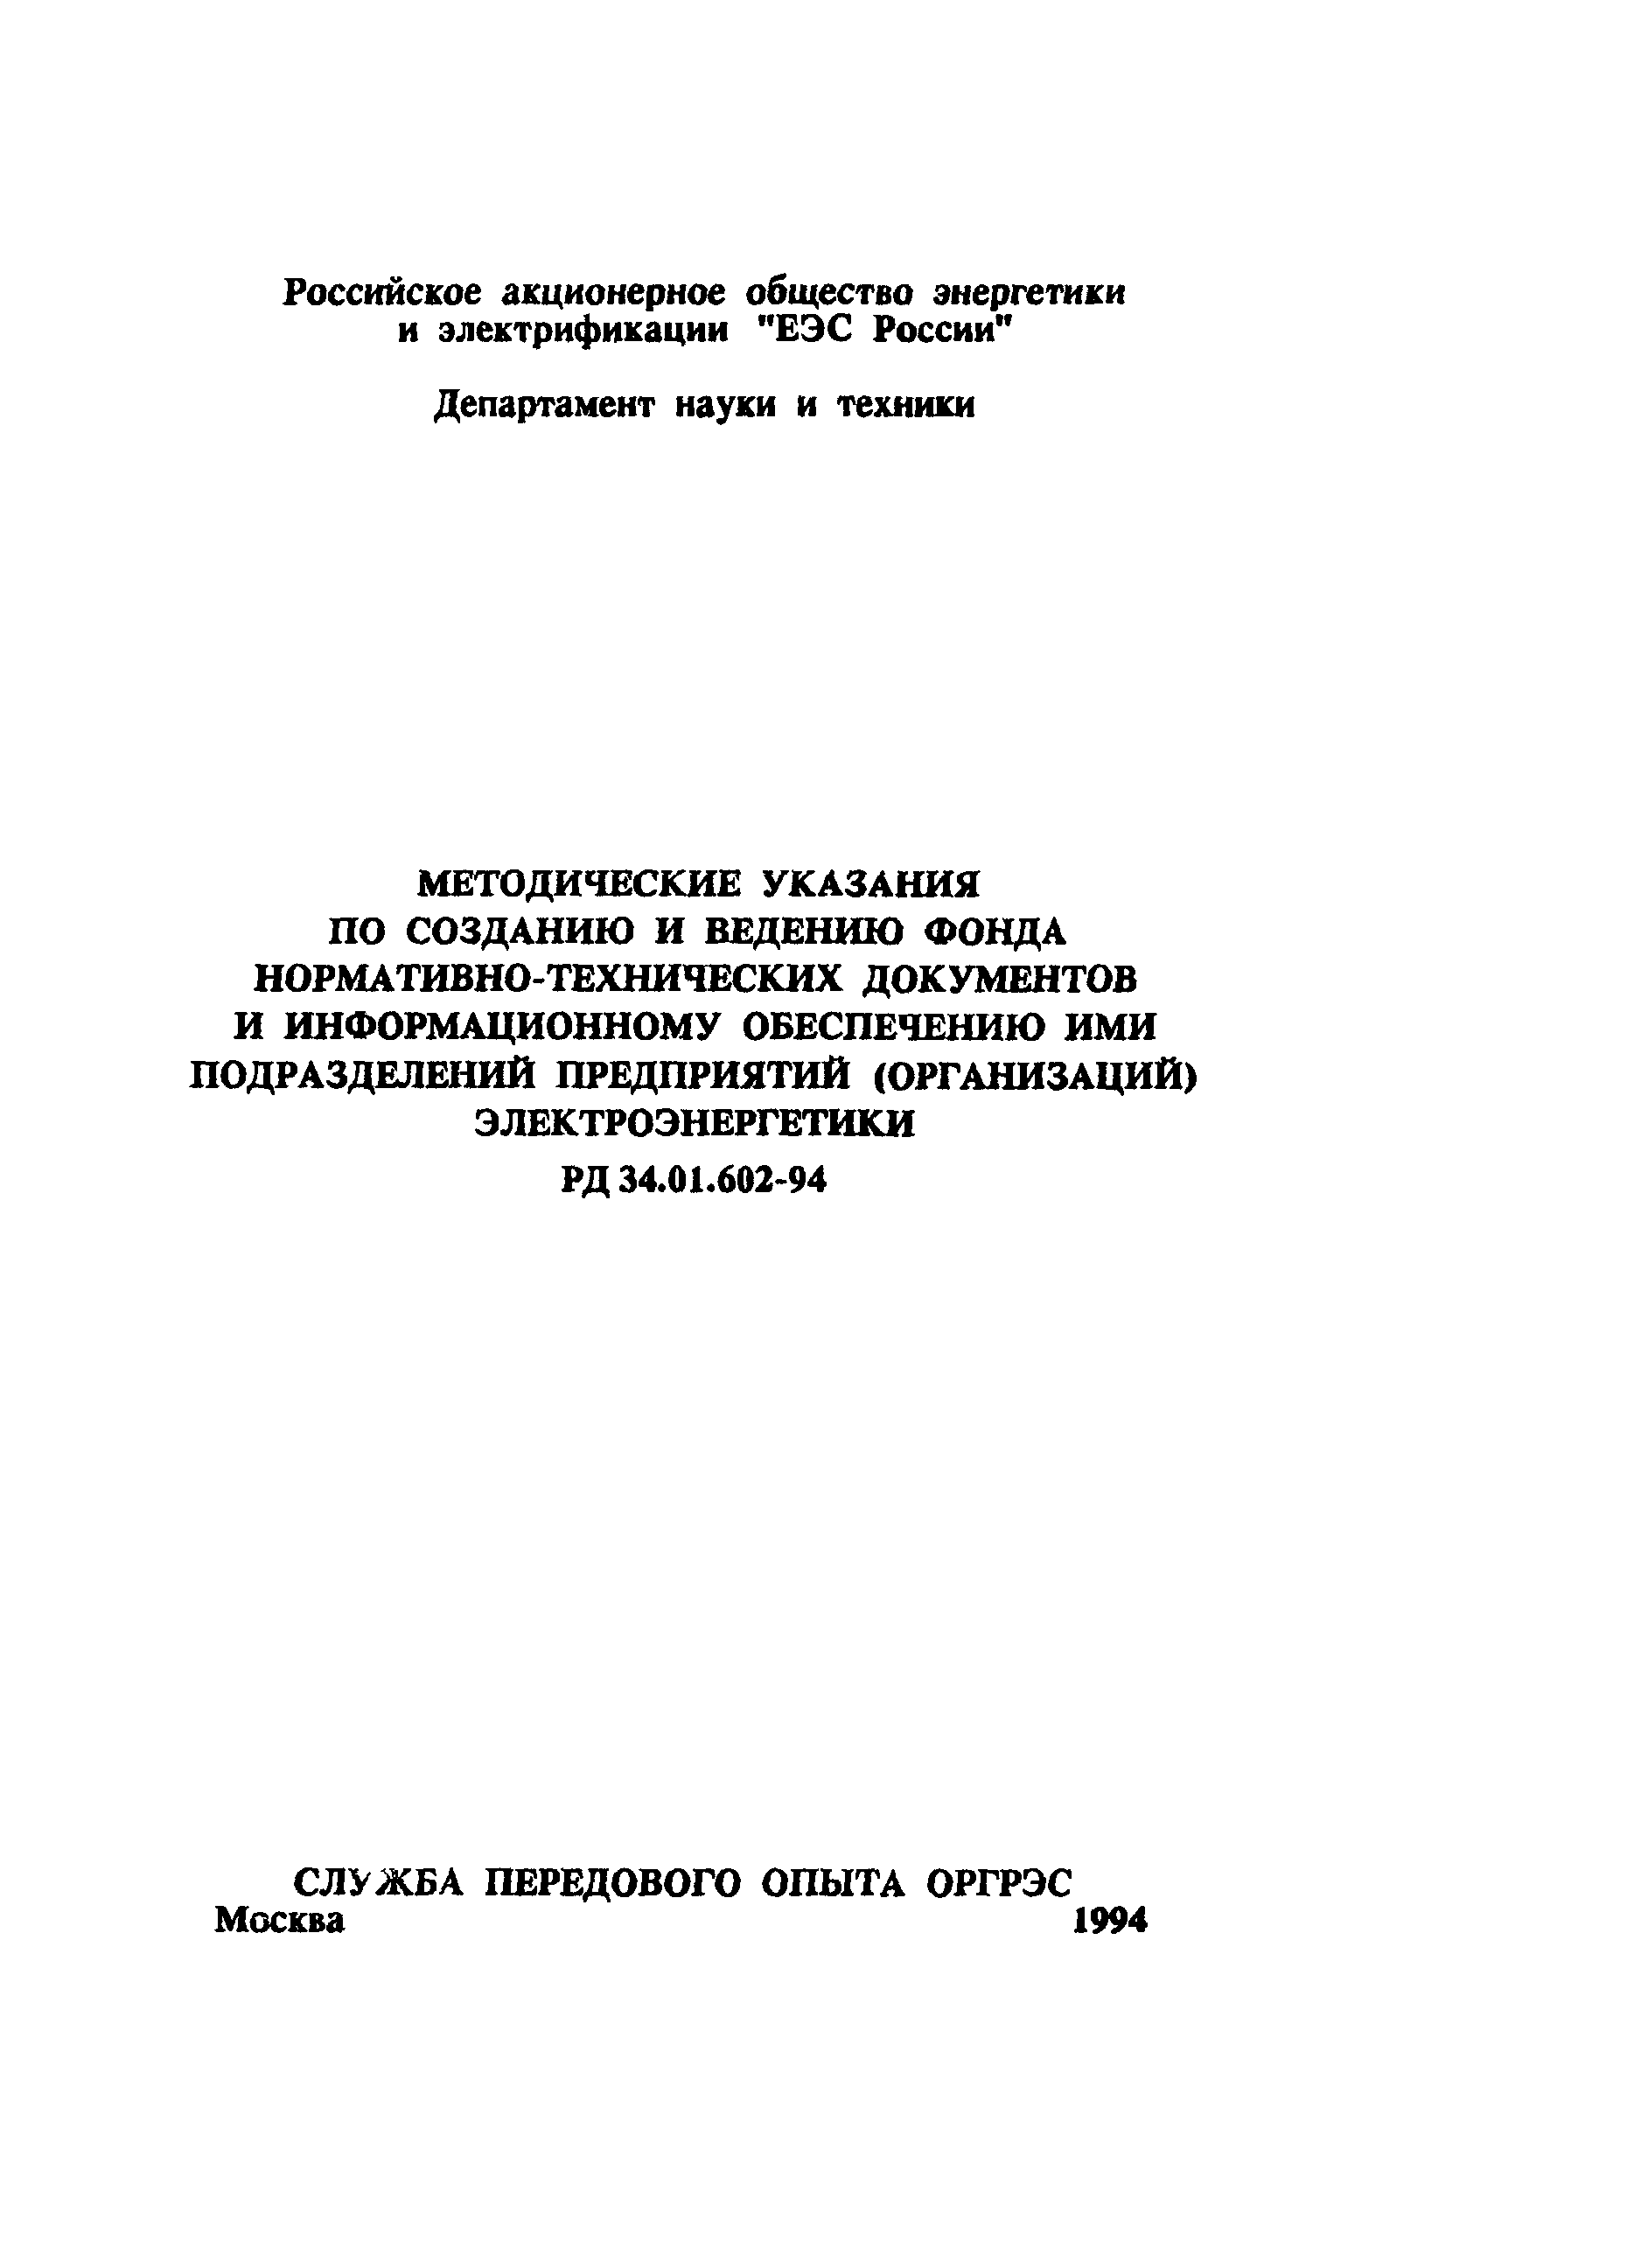 РД 34.01.602-94